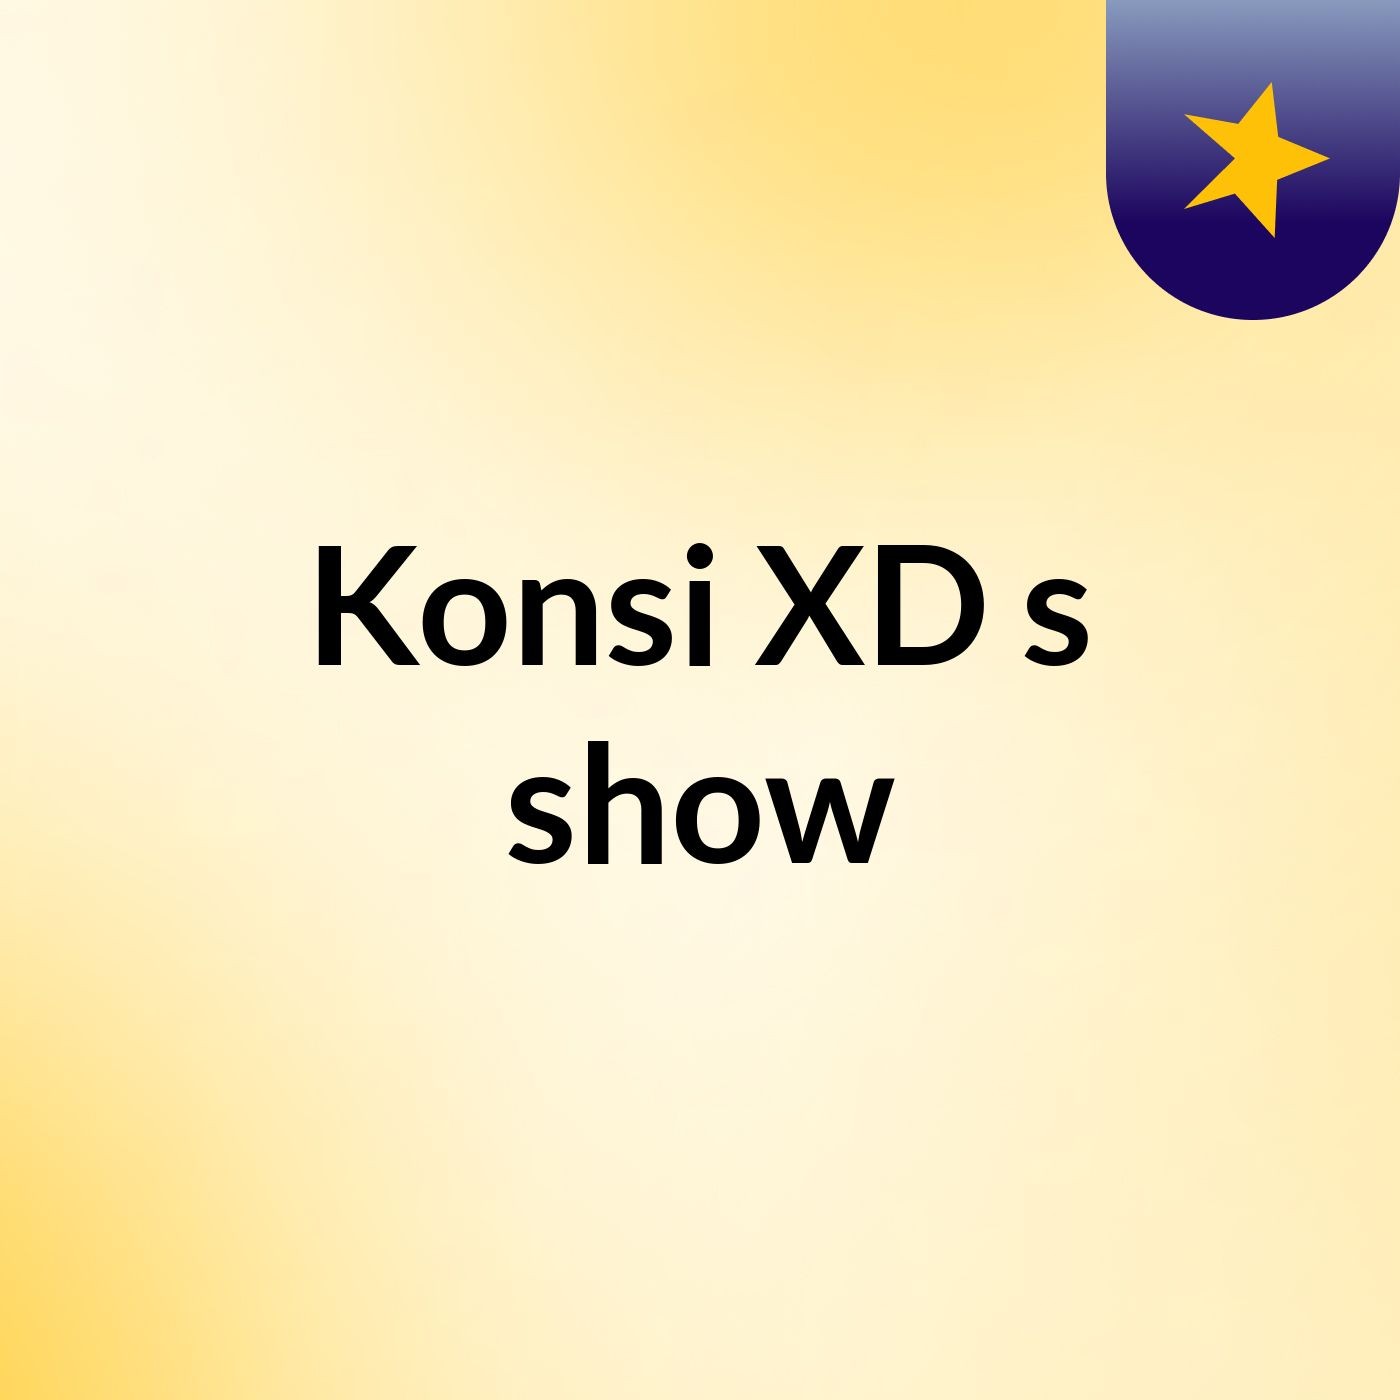 Konsi XD's show